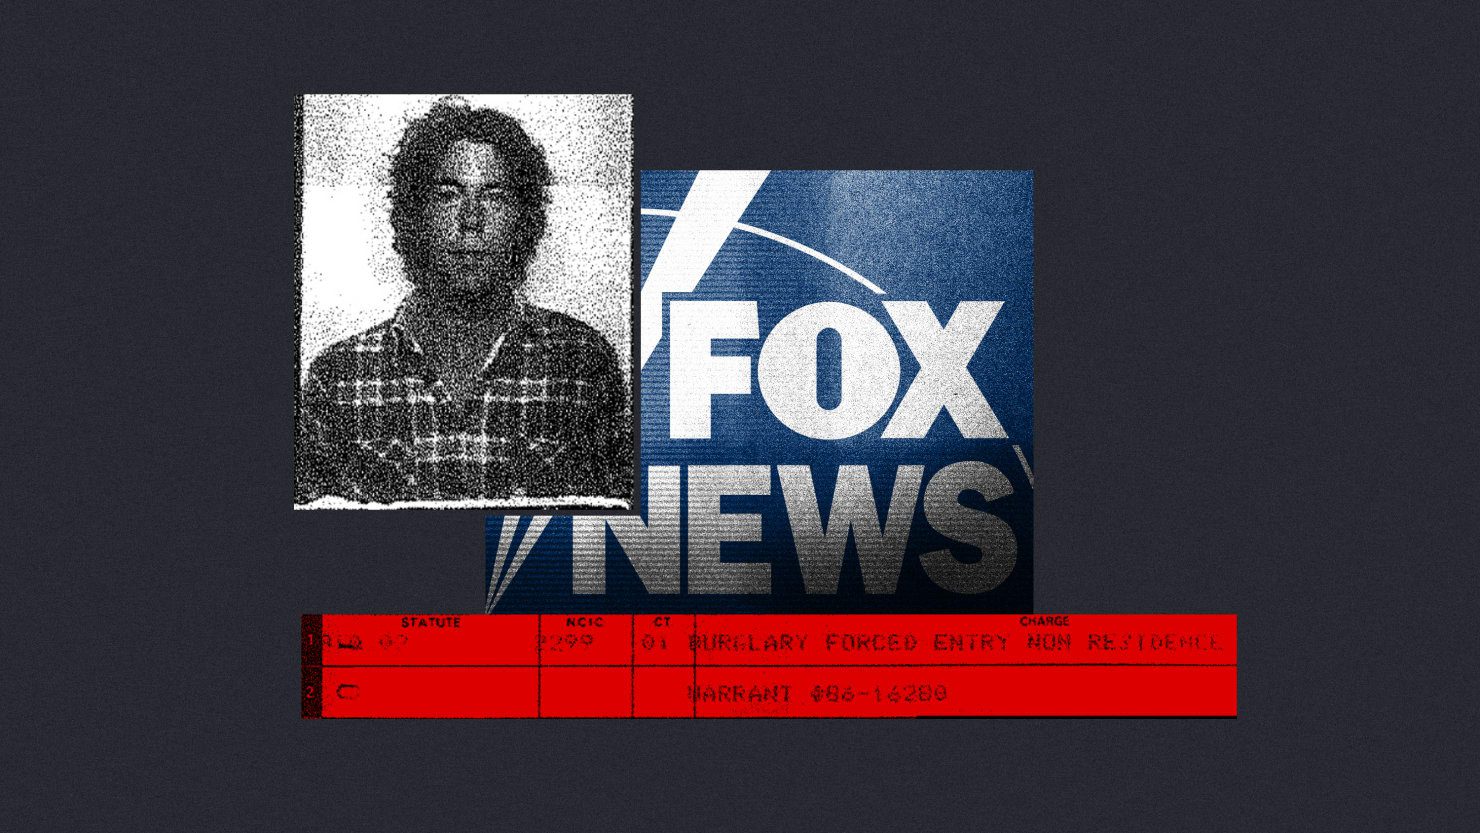 El editor de Fox News que supervisa el crimen es un delincuente mismo